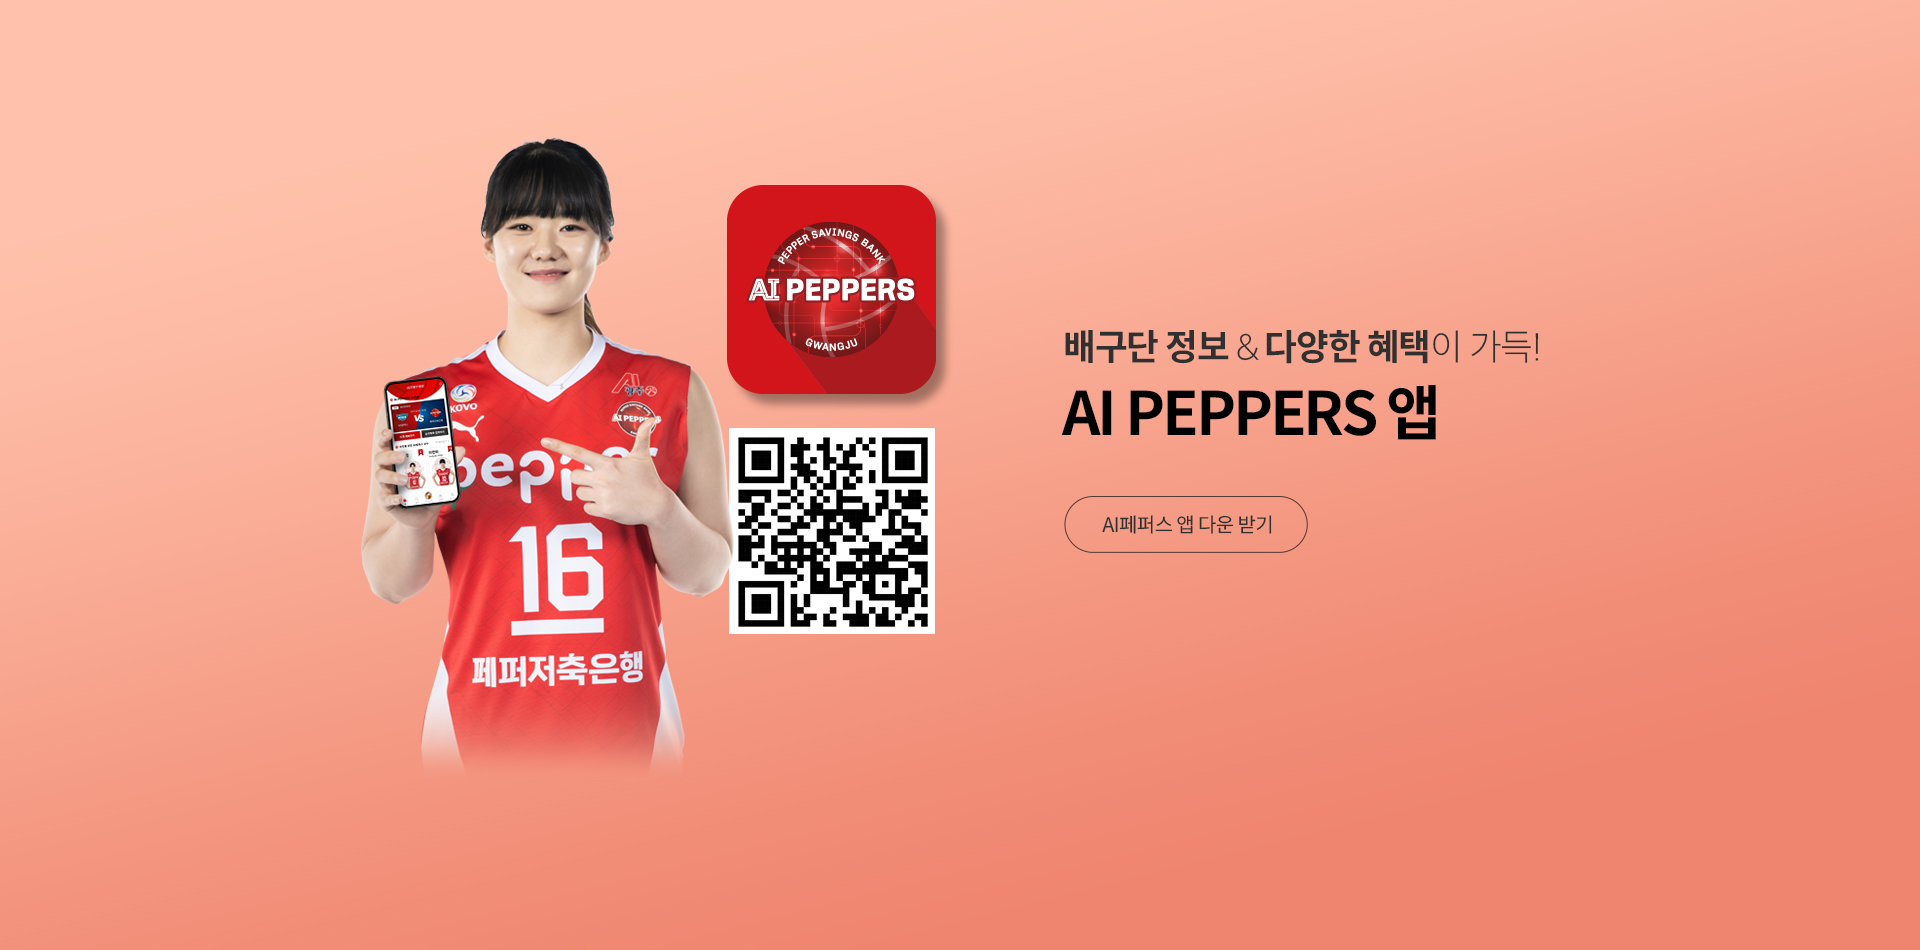 AI peppers App 안내 PC